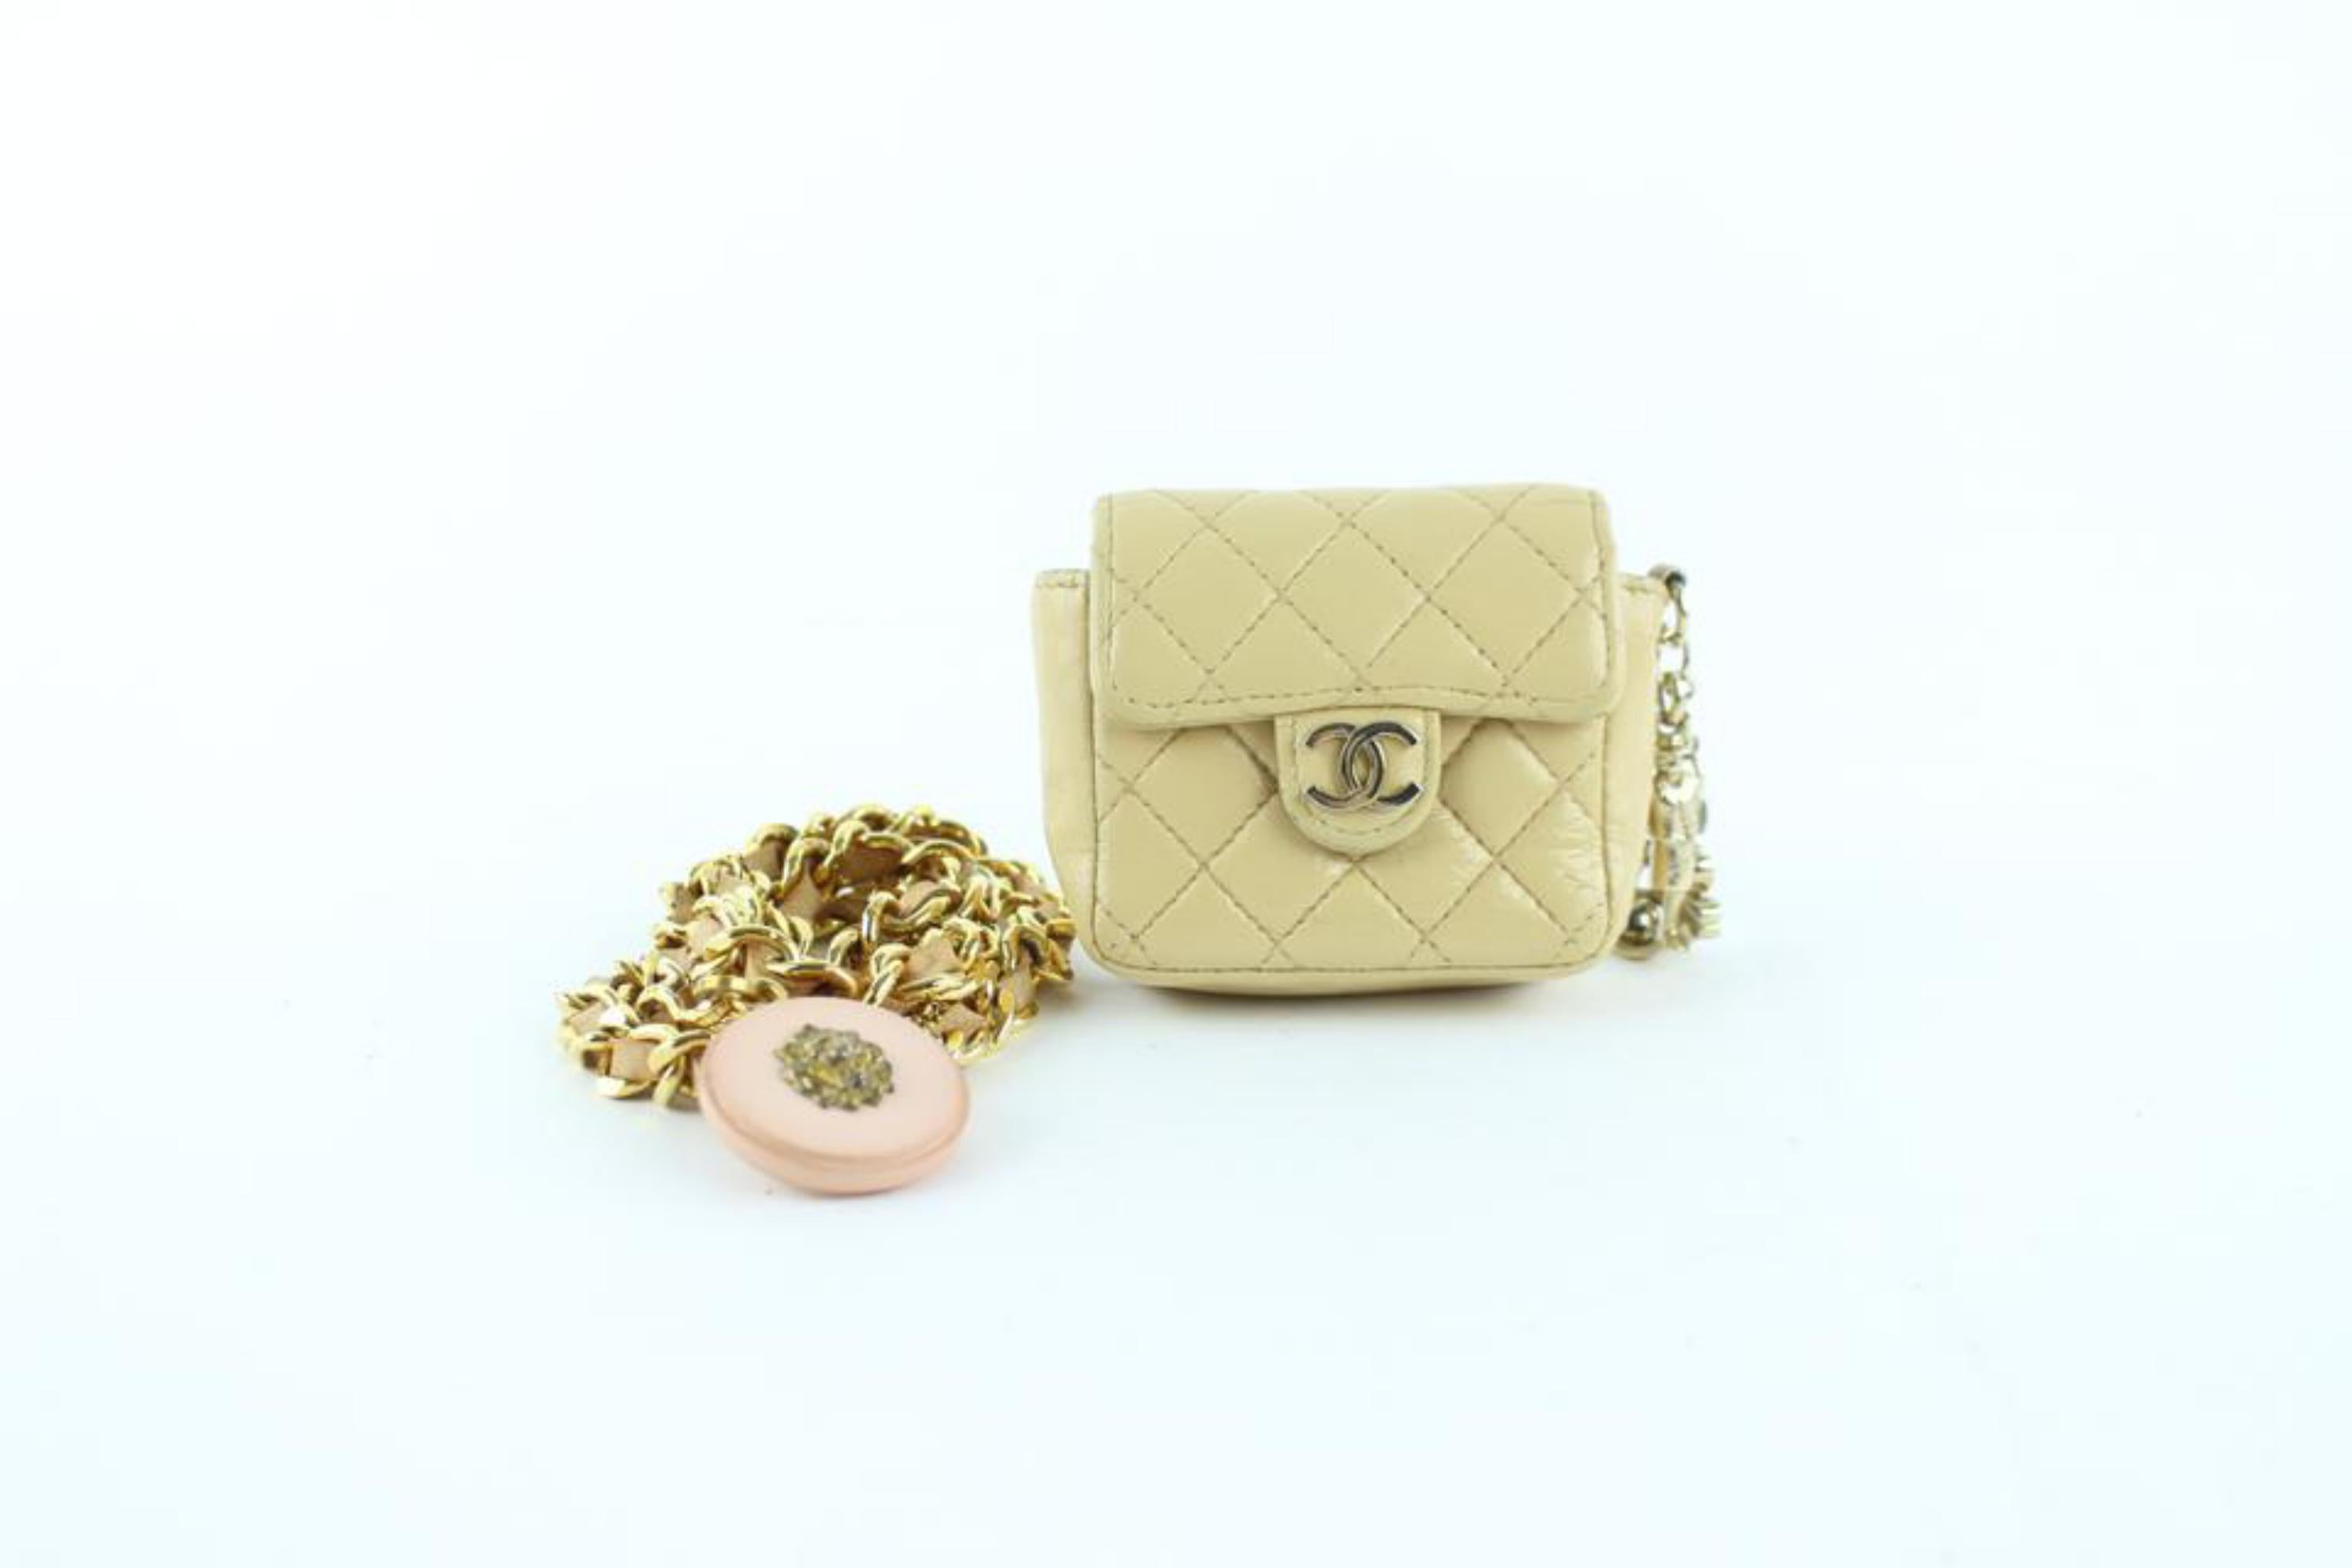 Women's Chanel Chain Belt Fanny Pack Waist Pouch 227070 Beige Leather Cross Body Bag For Sale